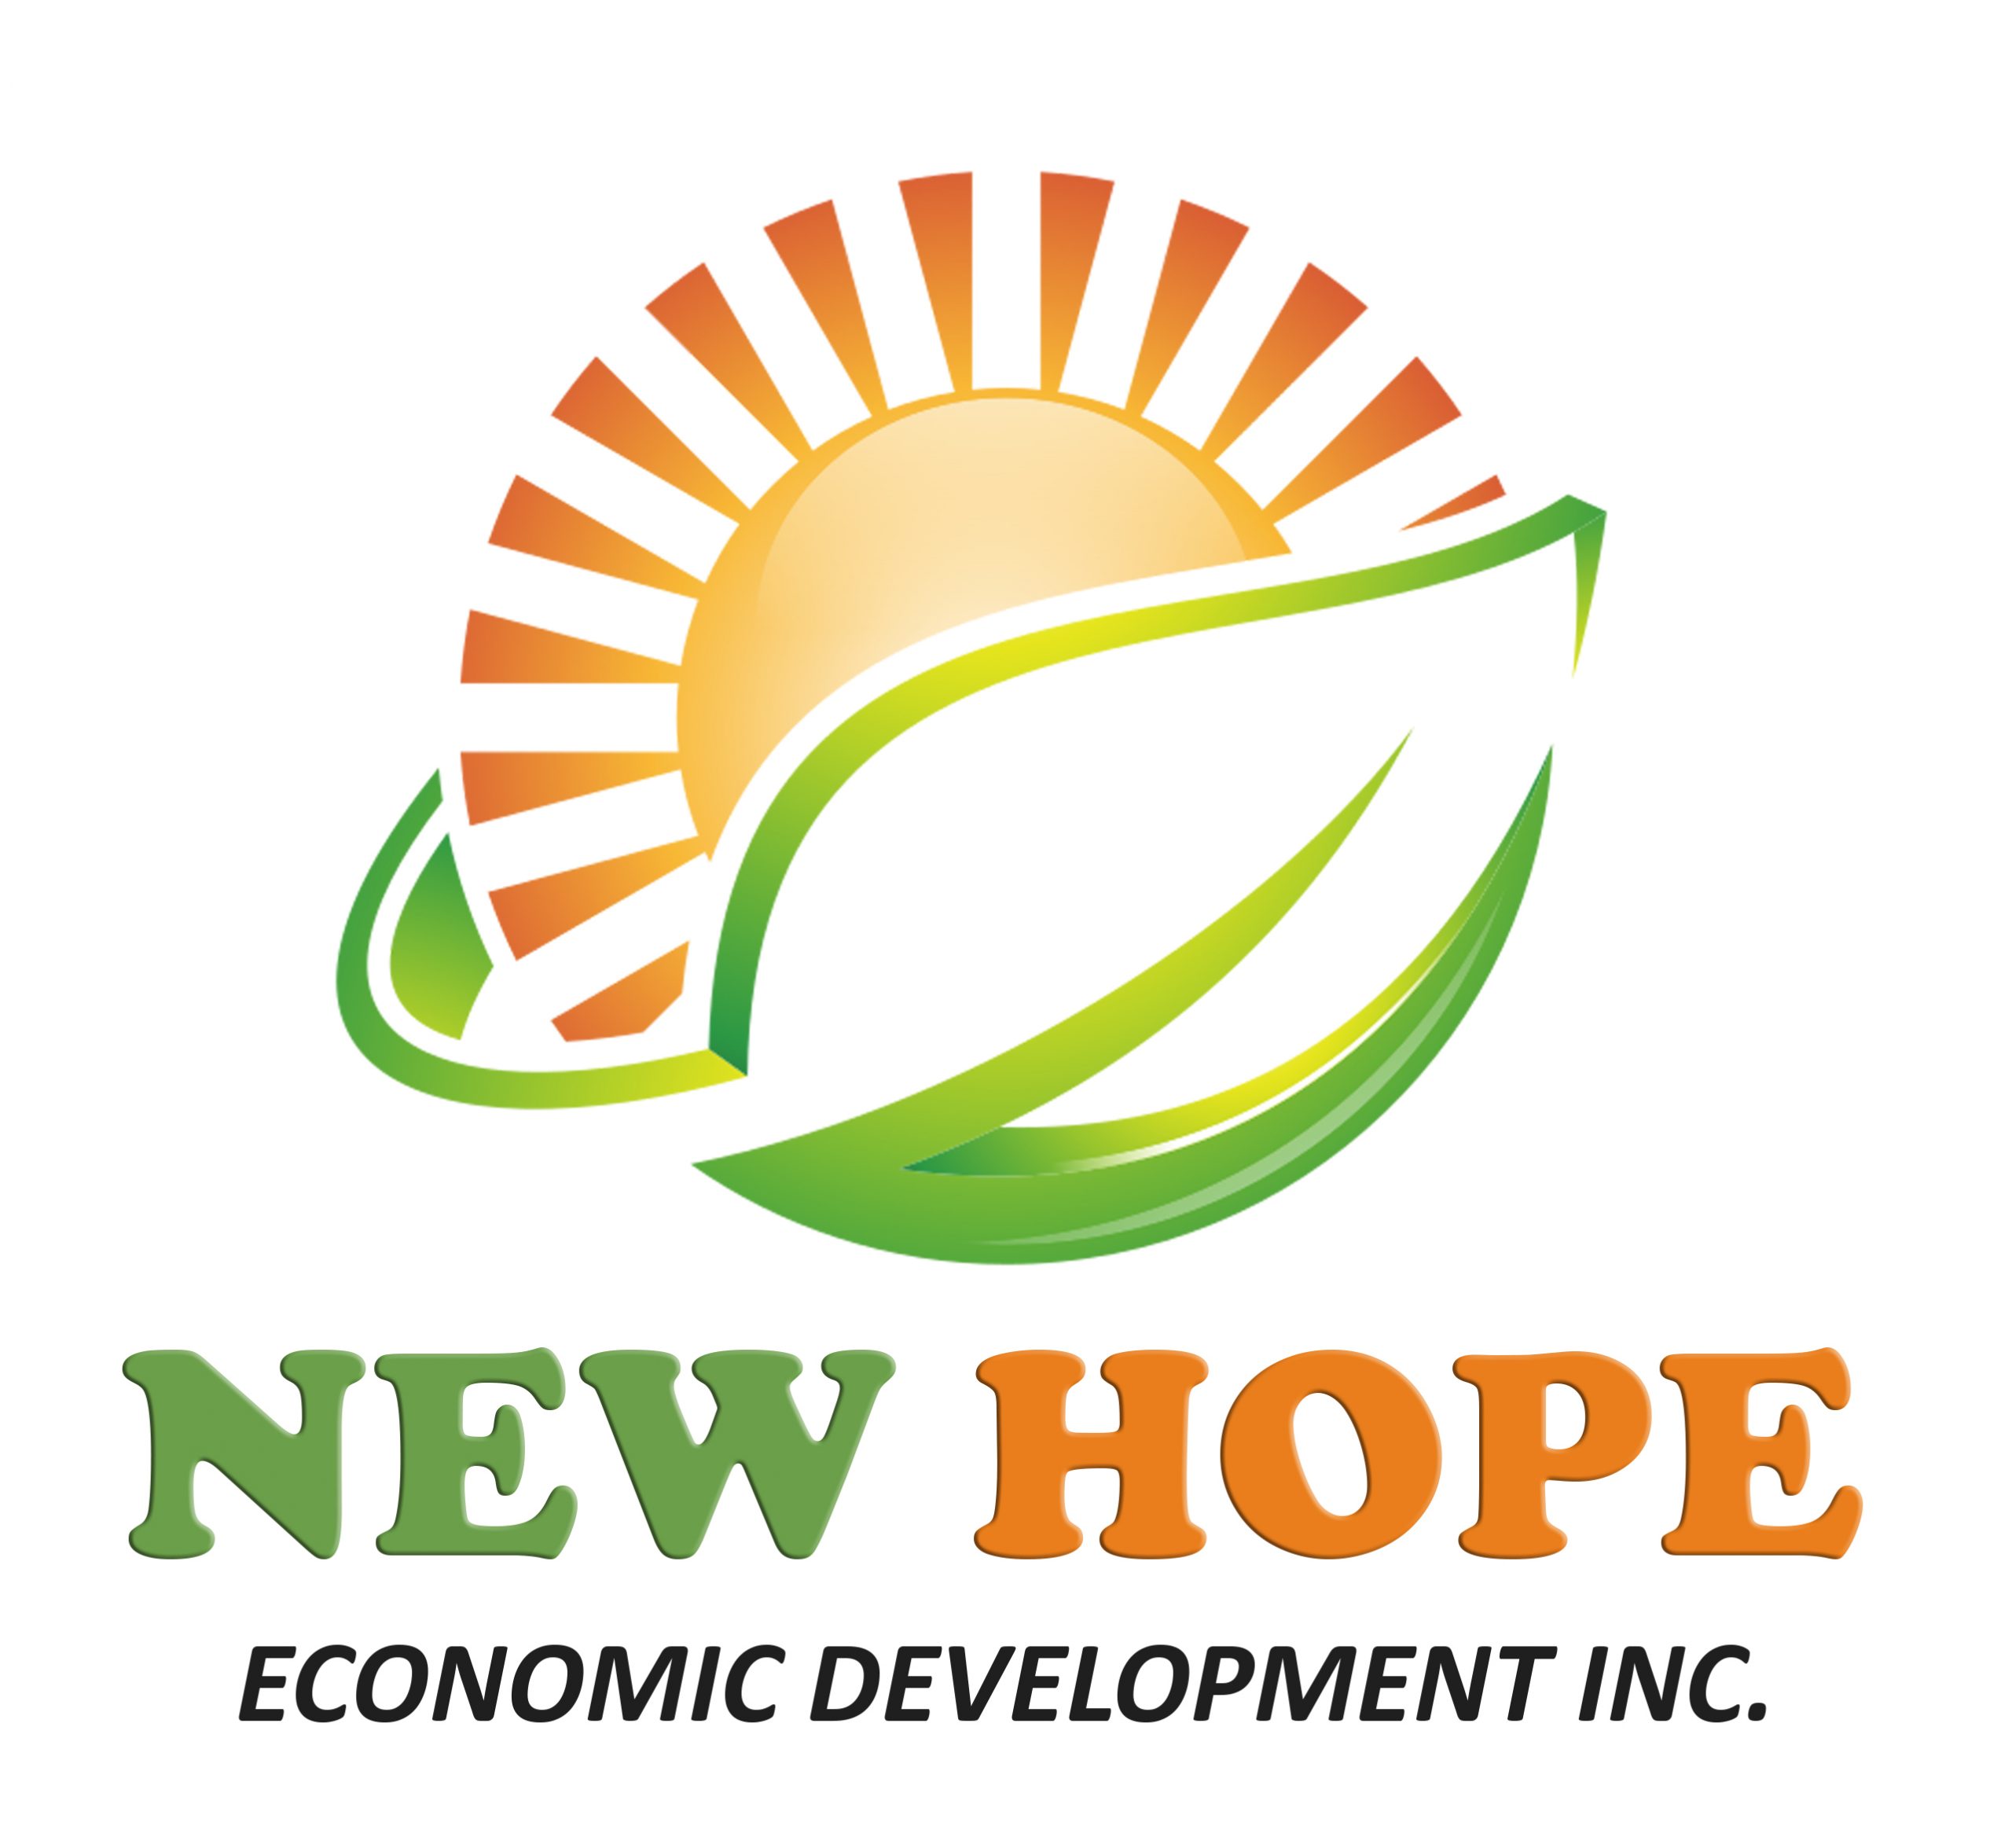 New Hope Economic Development